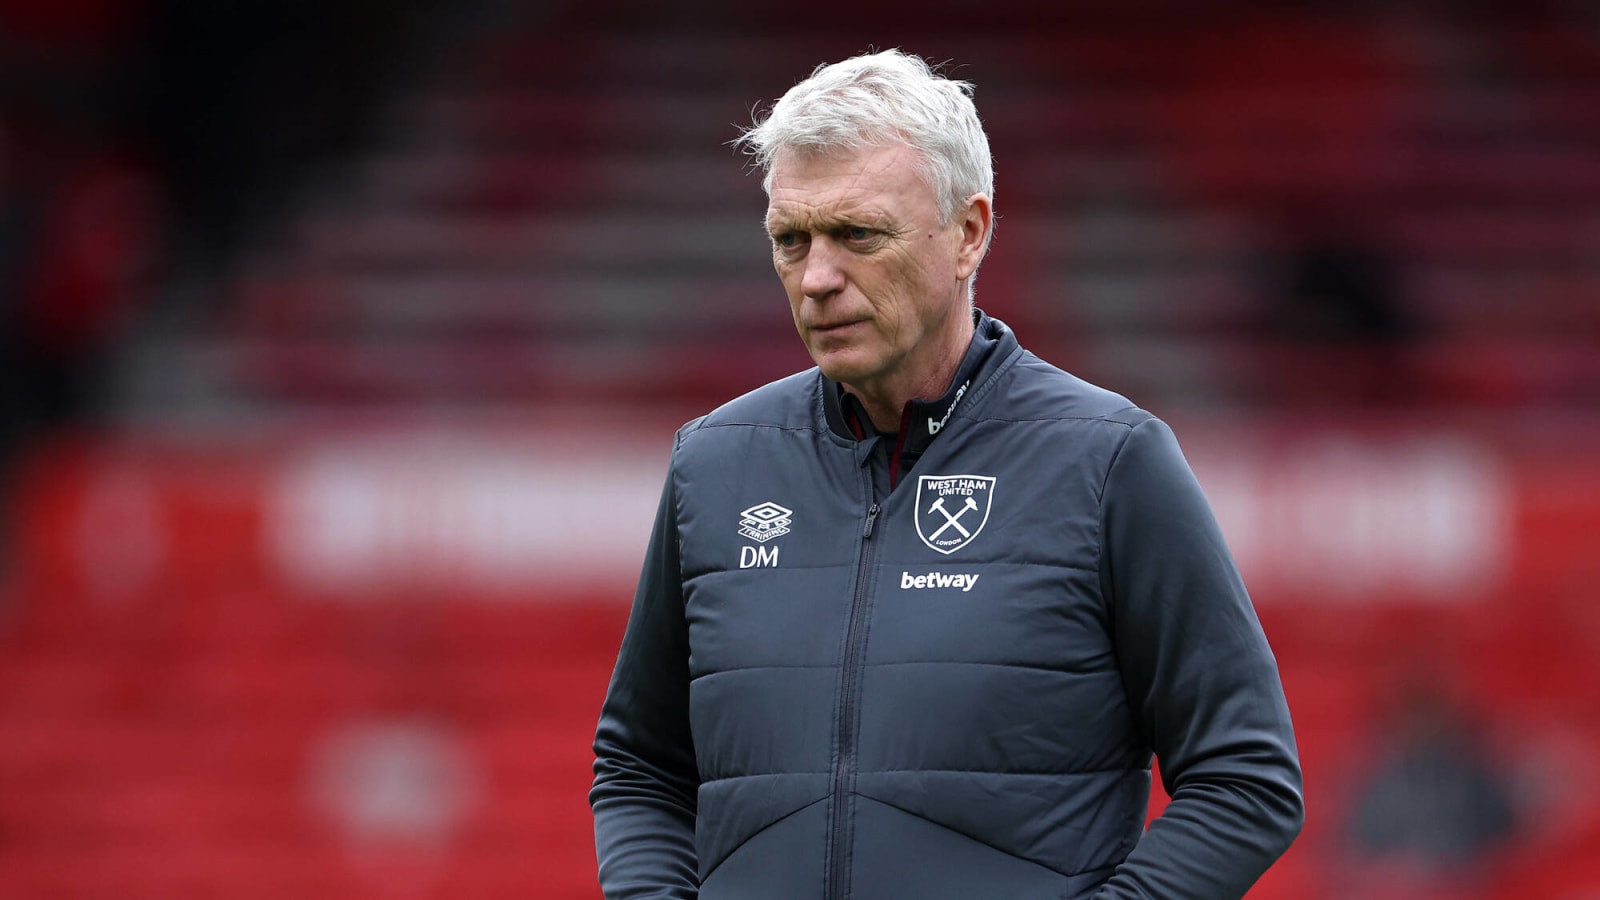 West Ham United’s stance has been revealed amid David Moyes sacking rumours